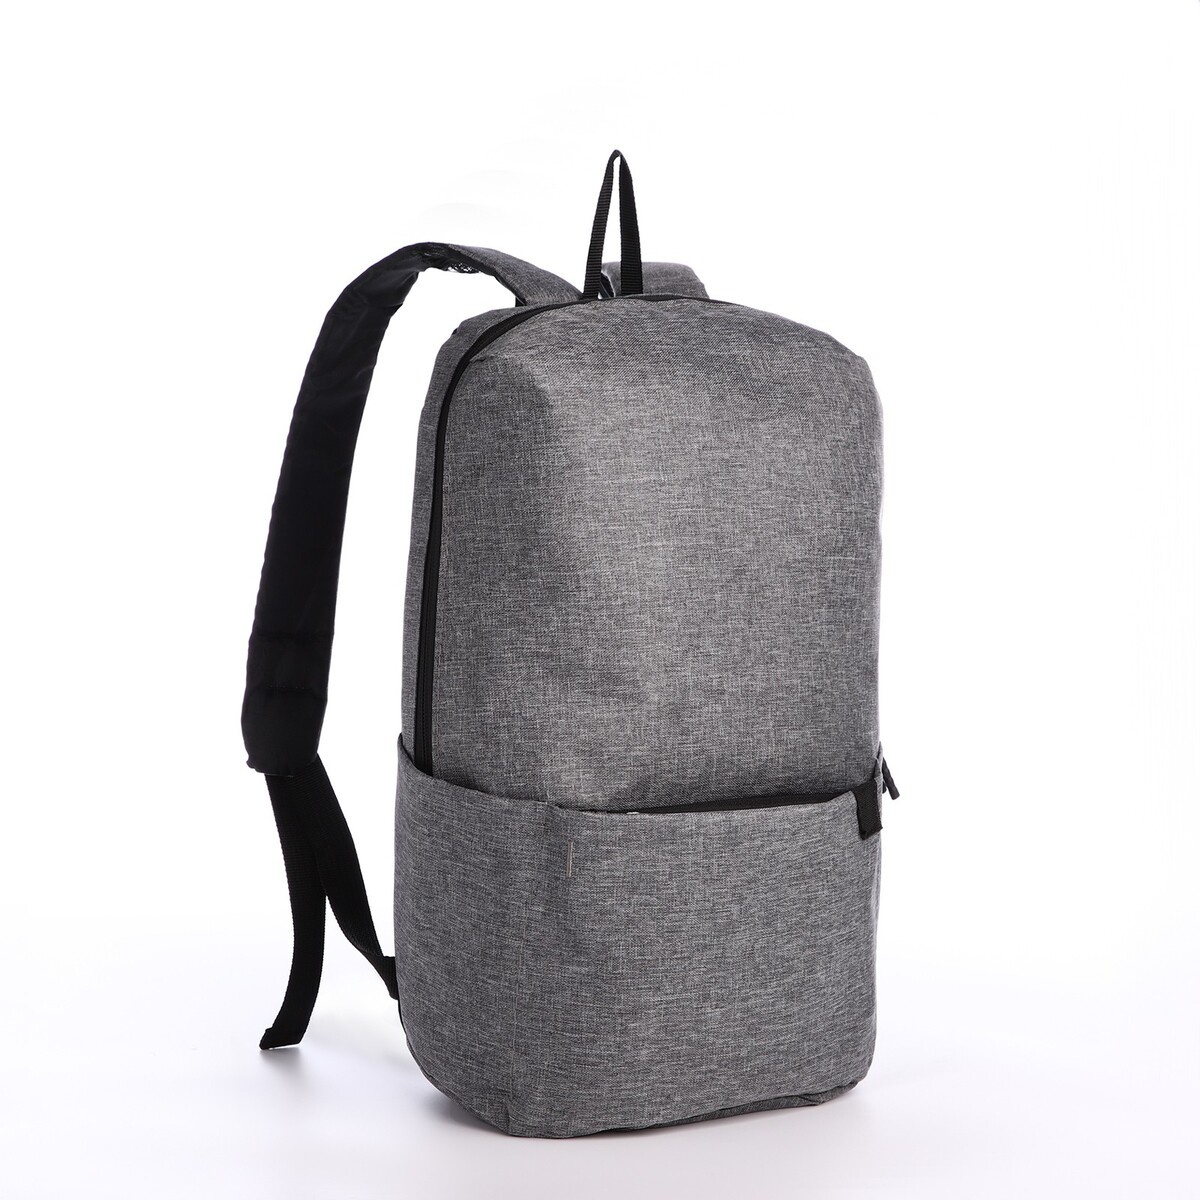 Рюкзак молодежный из текстиля на молнии, водонепроницаемый, наружный карман, цвет серый